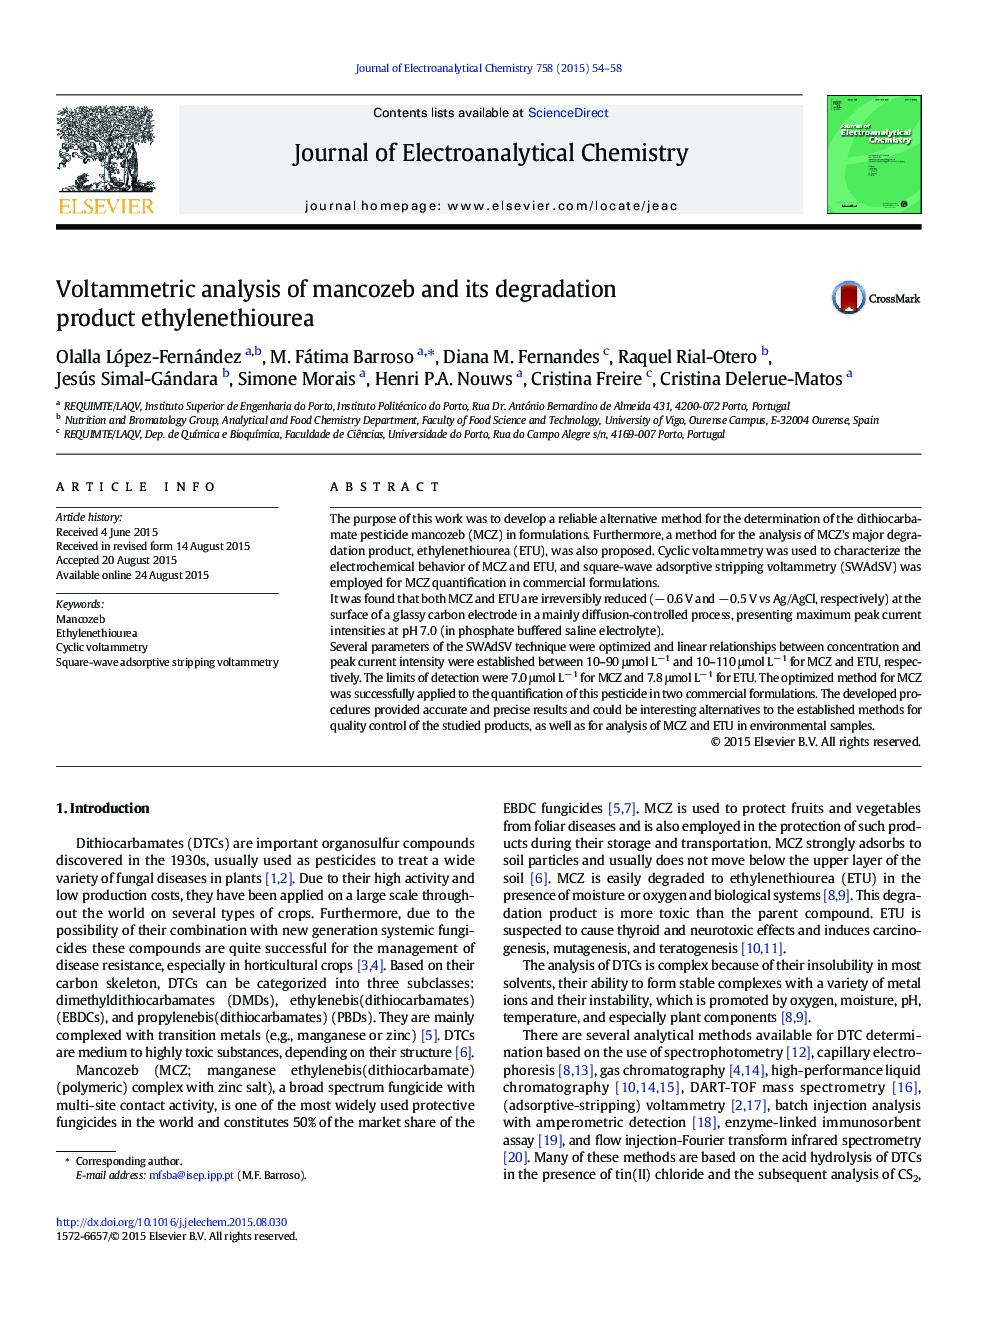 Voltammetric analysis of mancozeb and its degradation product ethylenethiourea